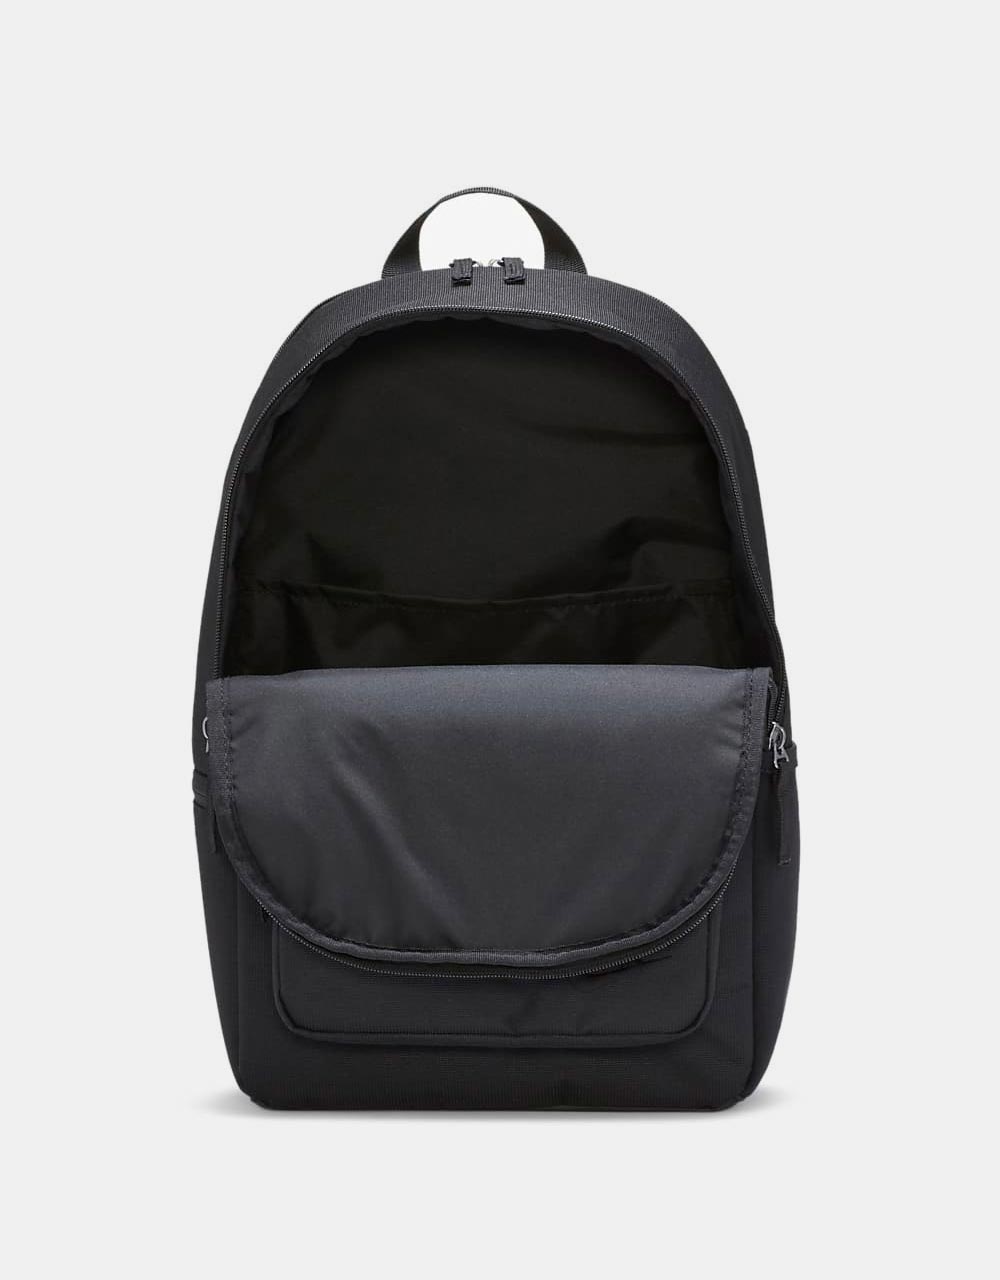 Nike Heritage Eugene Backpack - Black/Black/Black